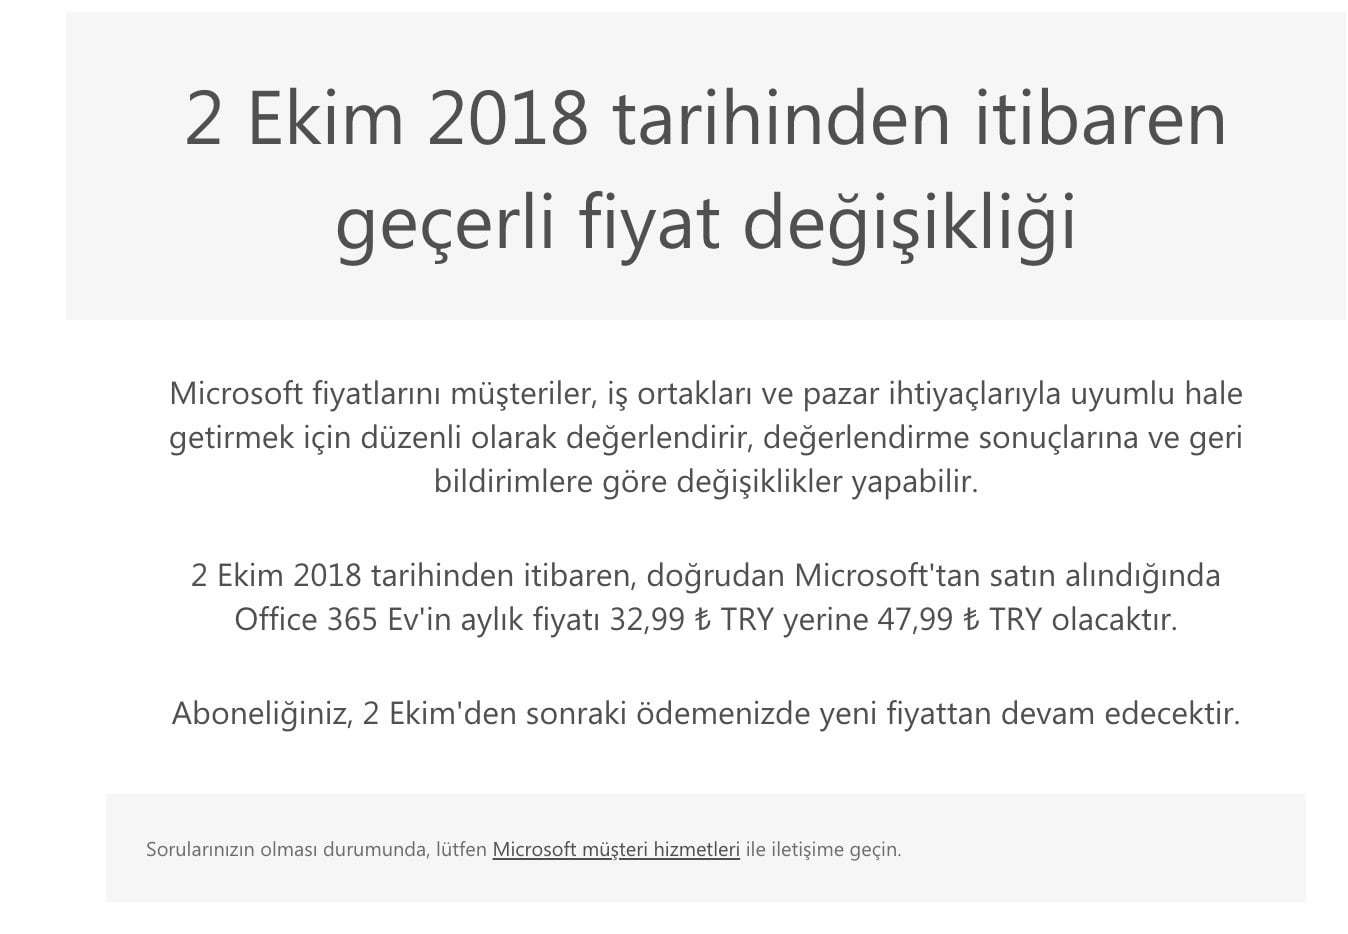 Microsoft Office 365 fiyatı